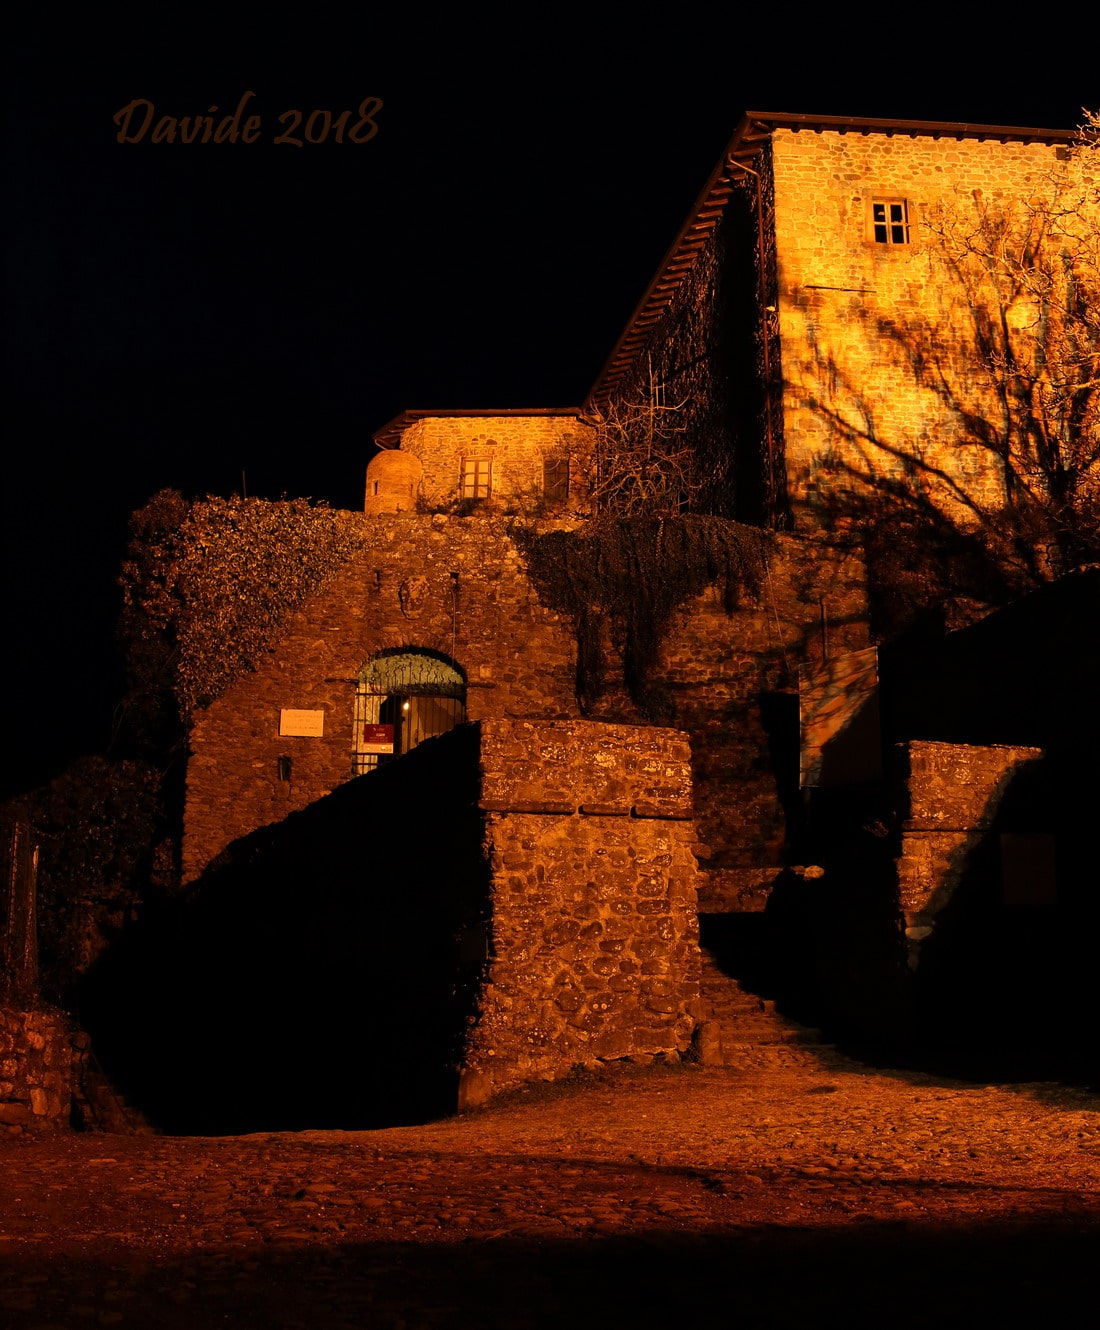 Pontremoli (Massa e Carrara, Toscana – Lunigiana, Italia). Ingresso del Castello del Piagnaro in notturna. Davide Tansini. 2018. Fotografia digitale